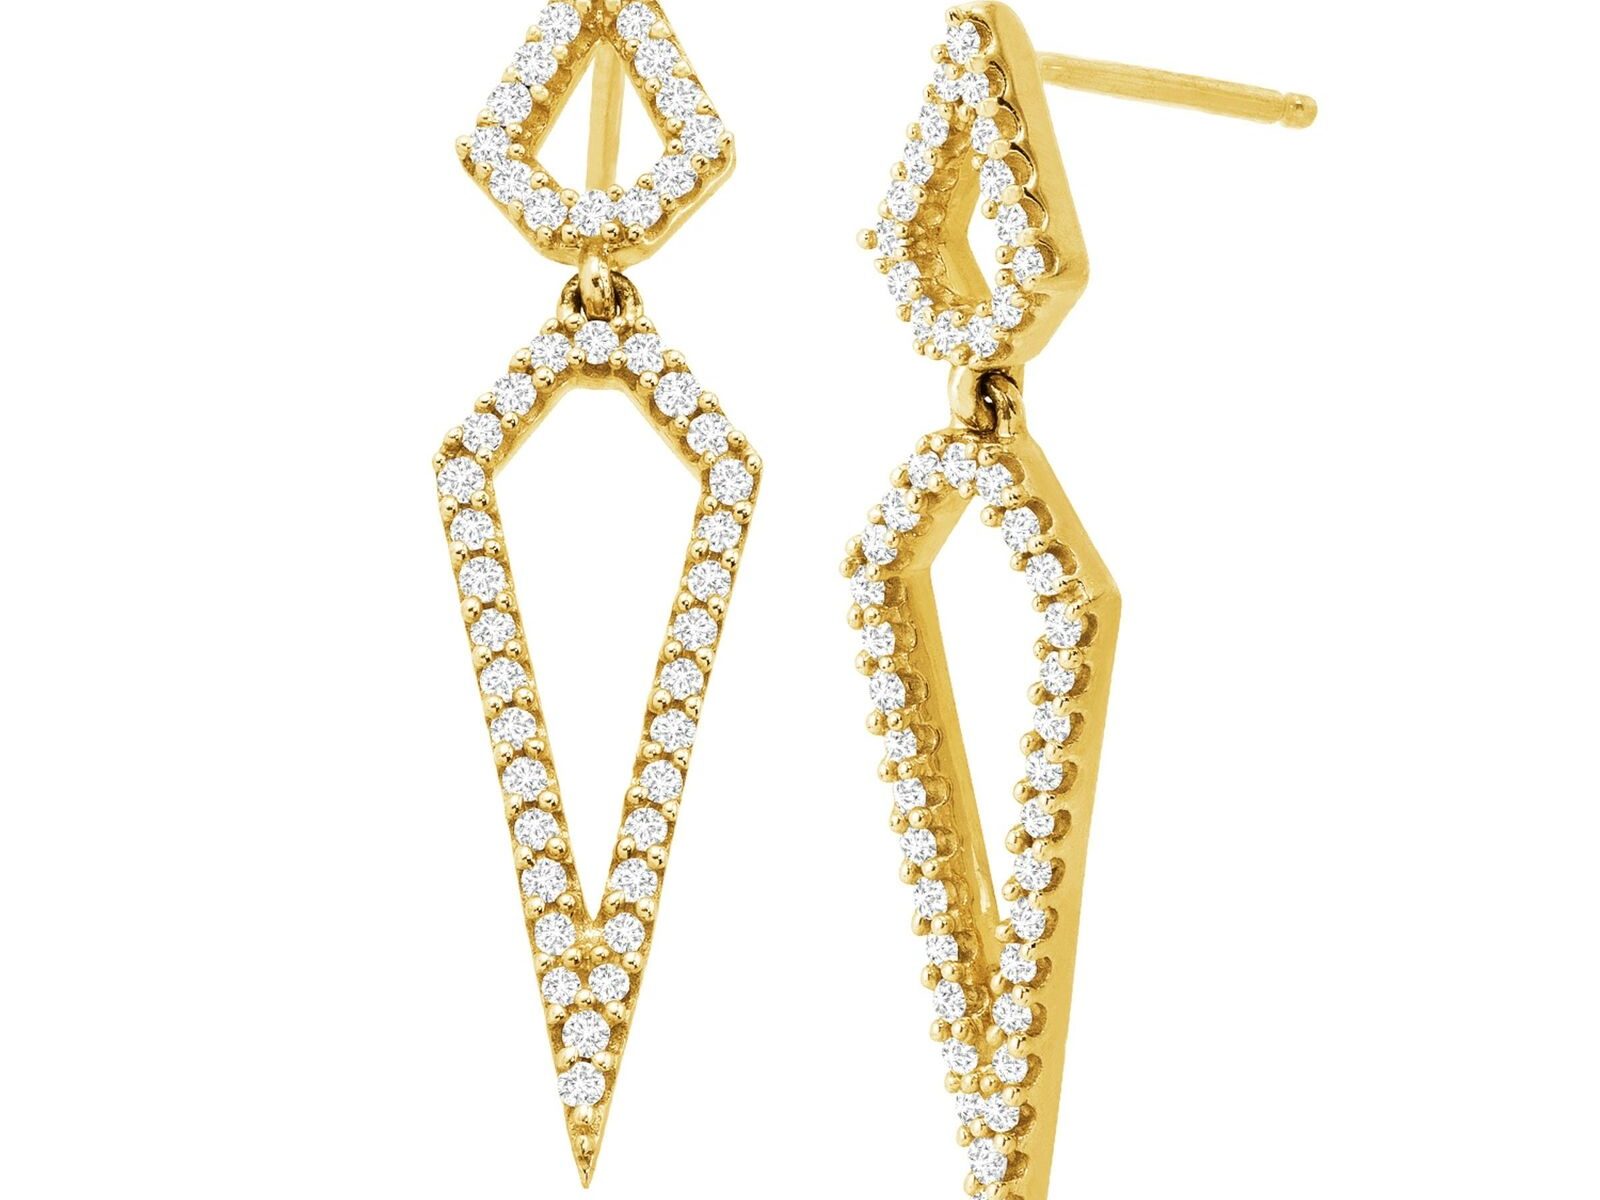 1/3 ct Geometric Diamond Drop Earrings in 10K Gold